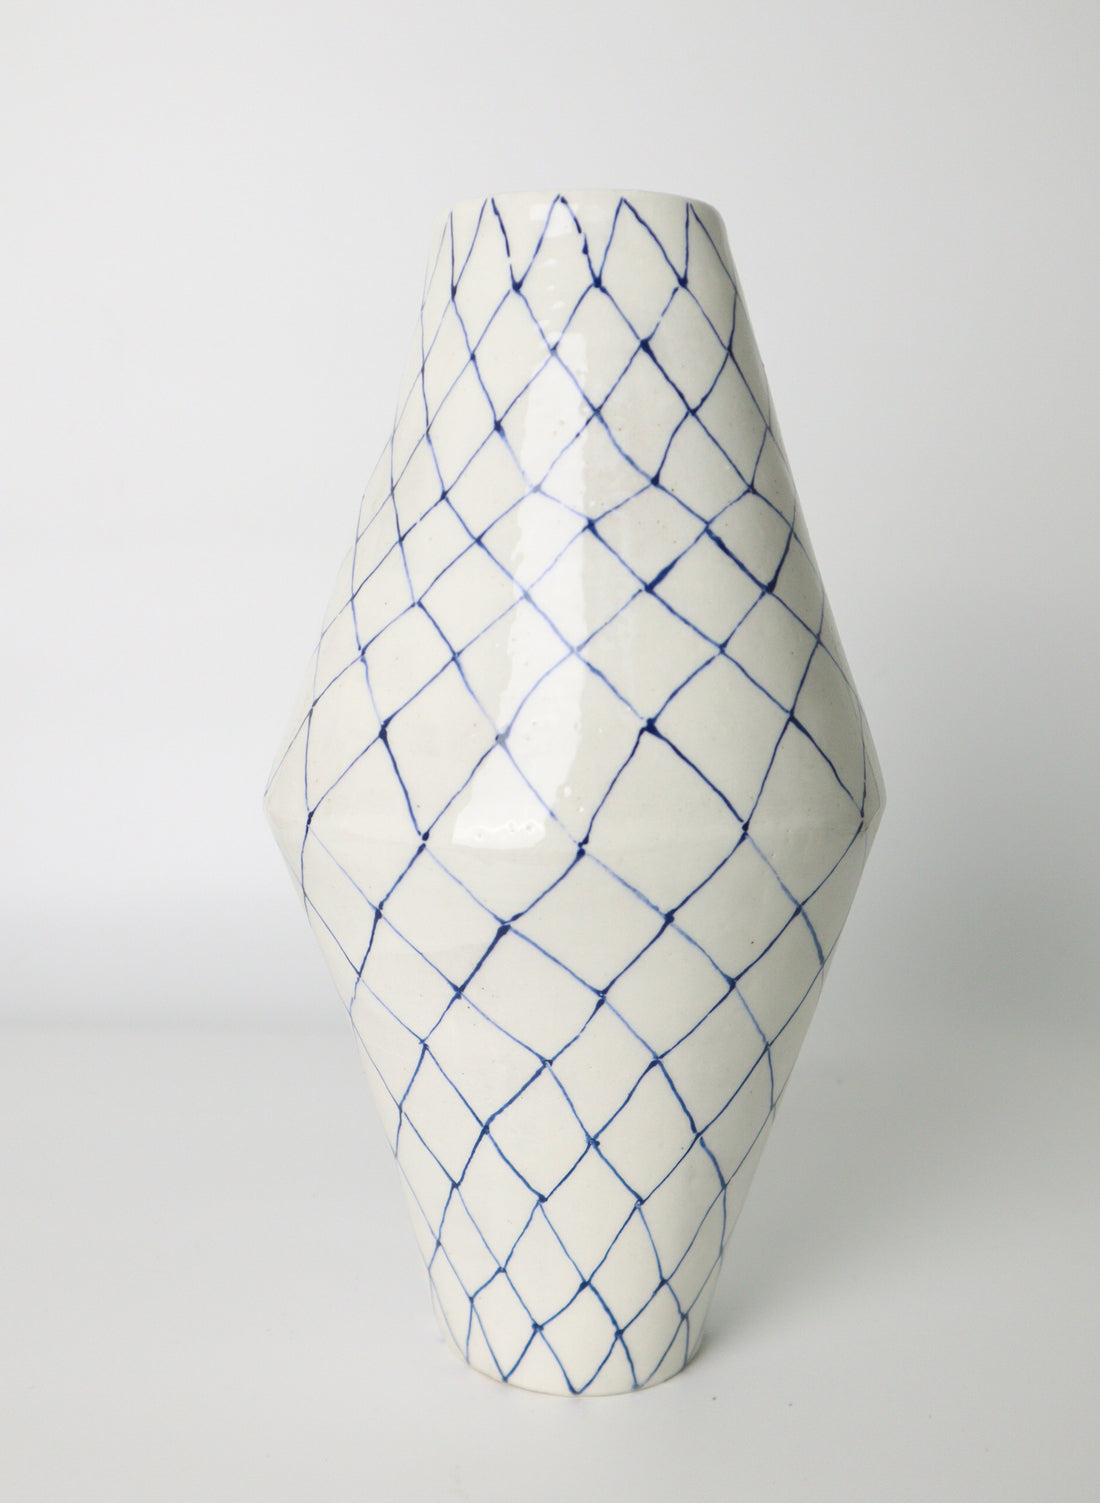 Handrawn Vase